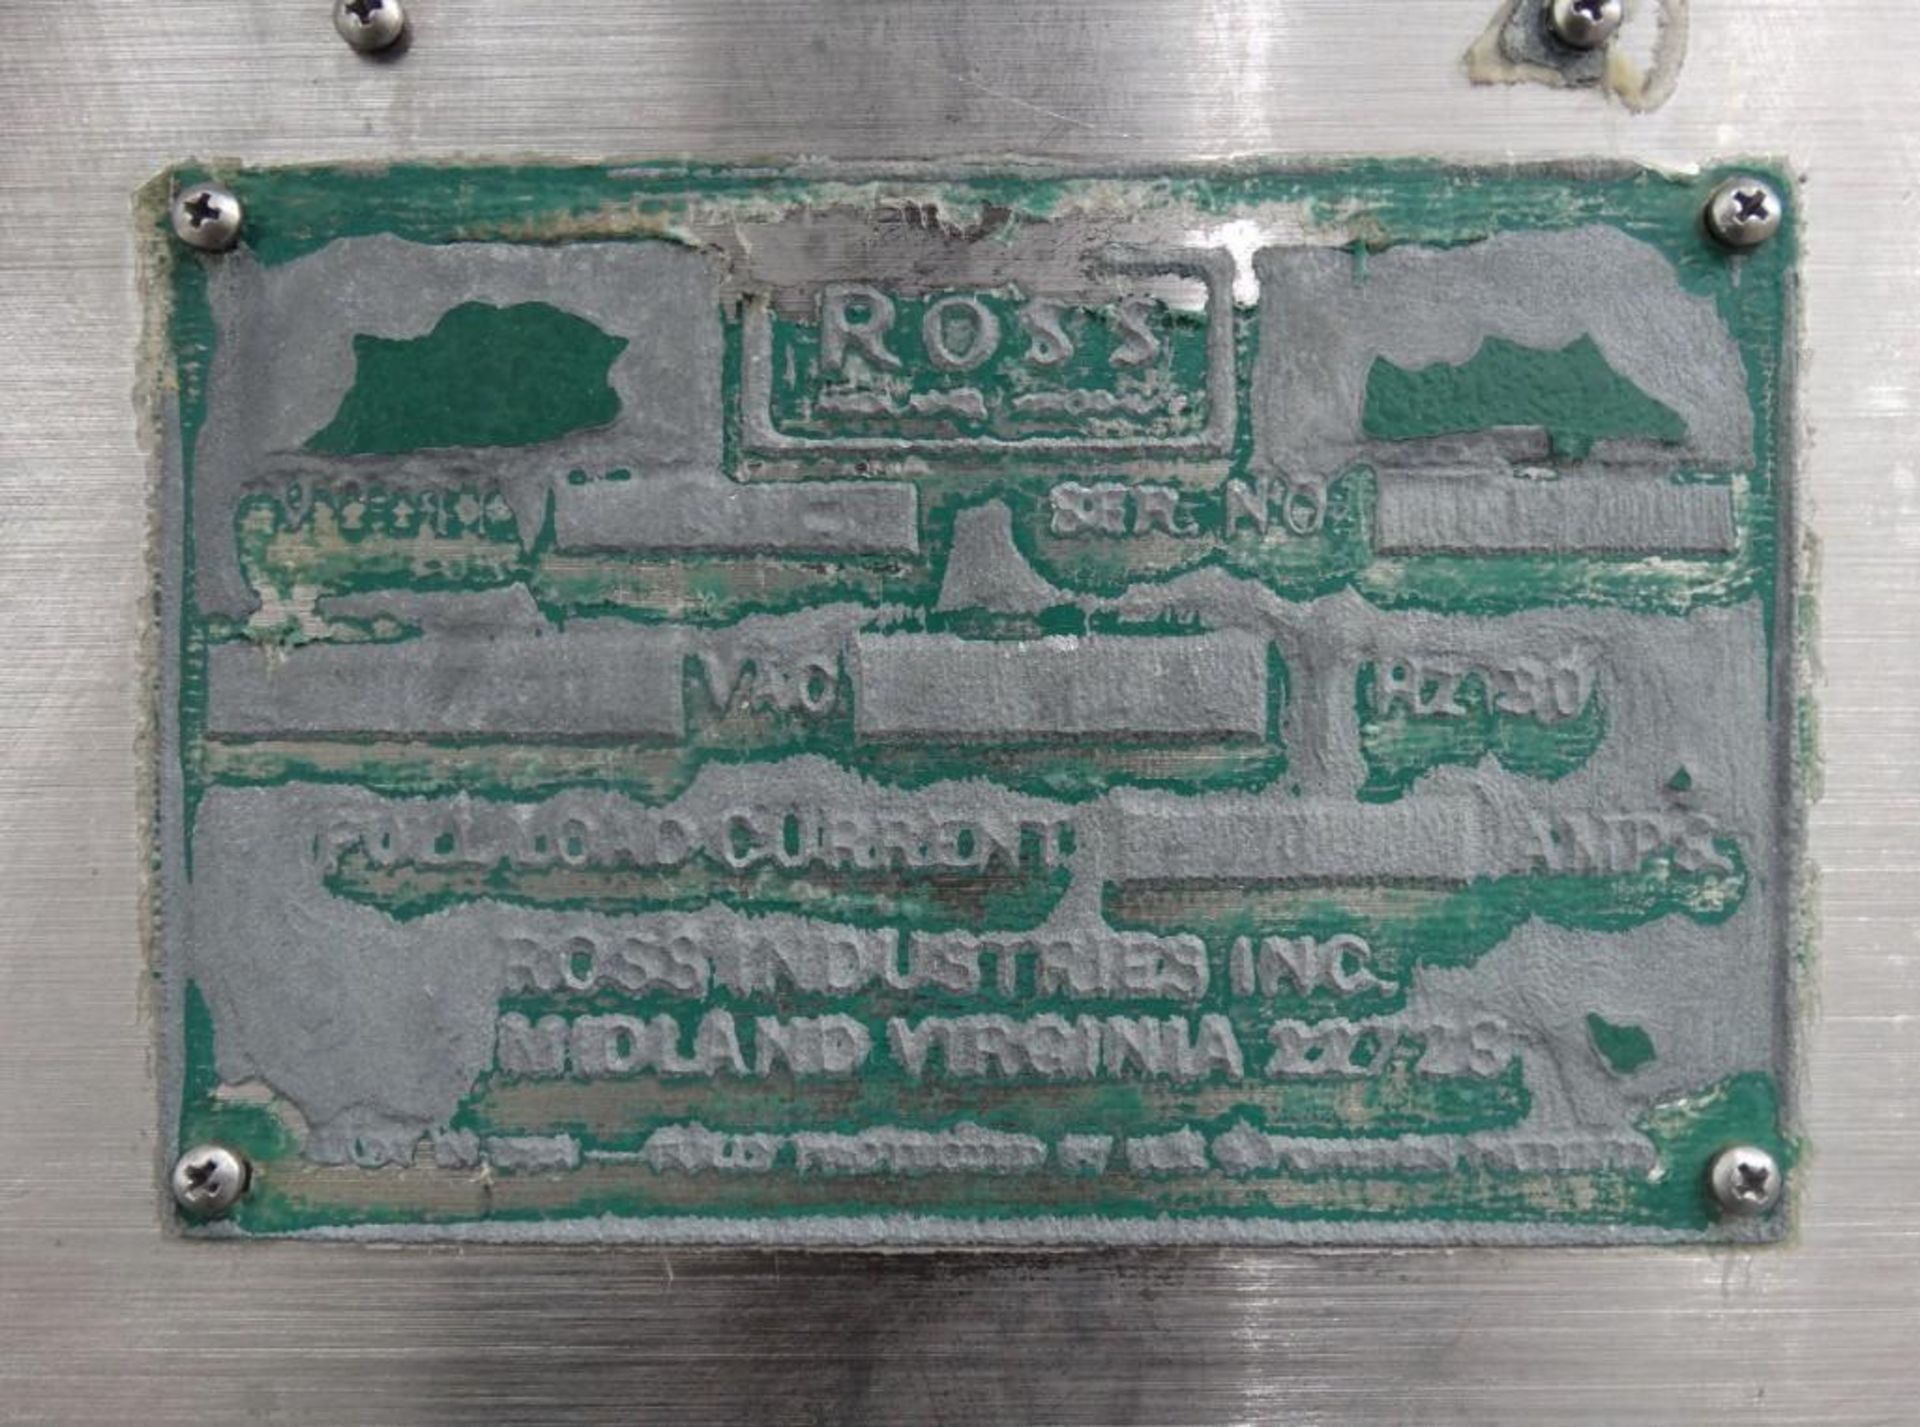 Ross Model 950-4 Stainless Steel Meat Slicer - Image 8 of 10